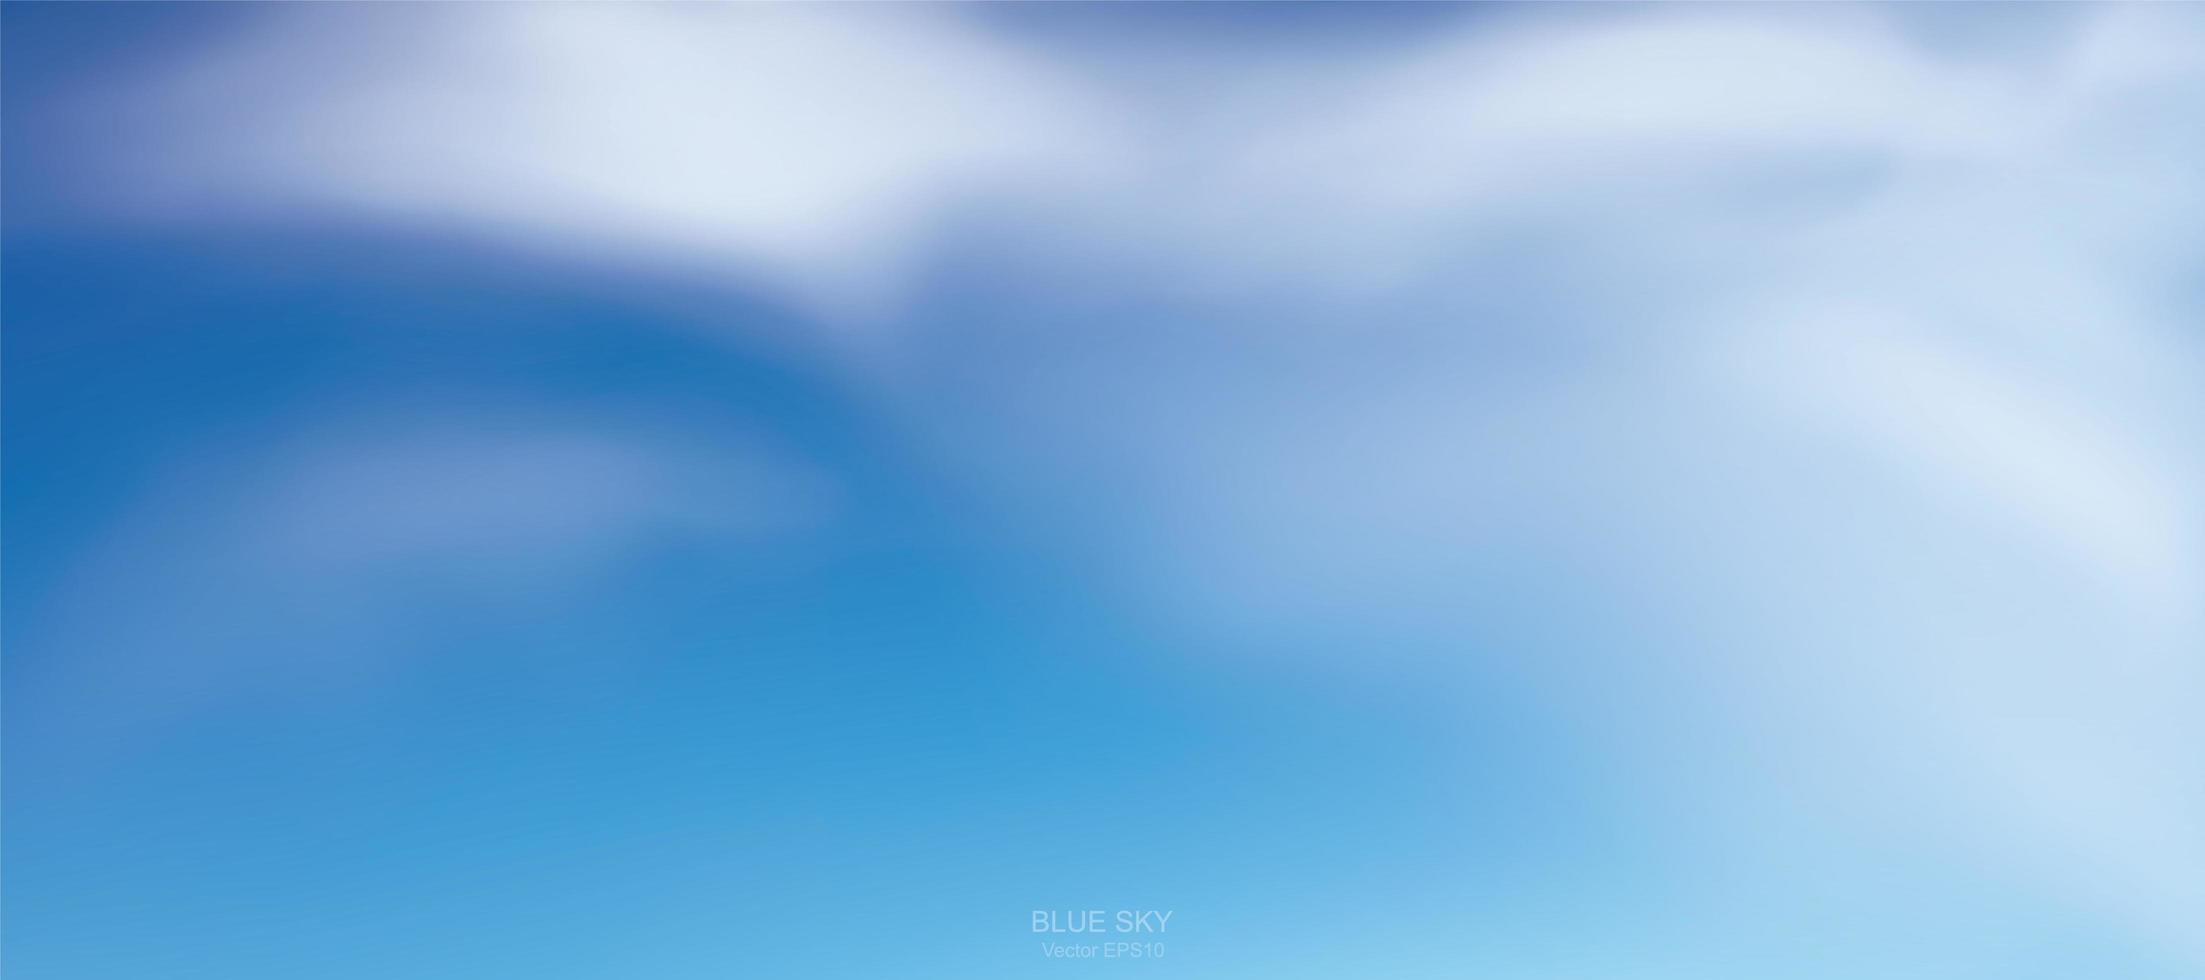 sfondo del cielo blu con nuvole bianche vettore